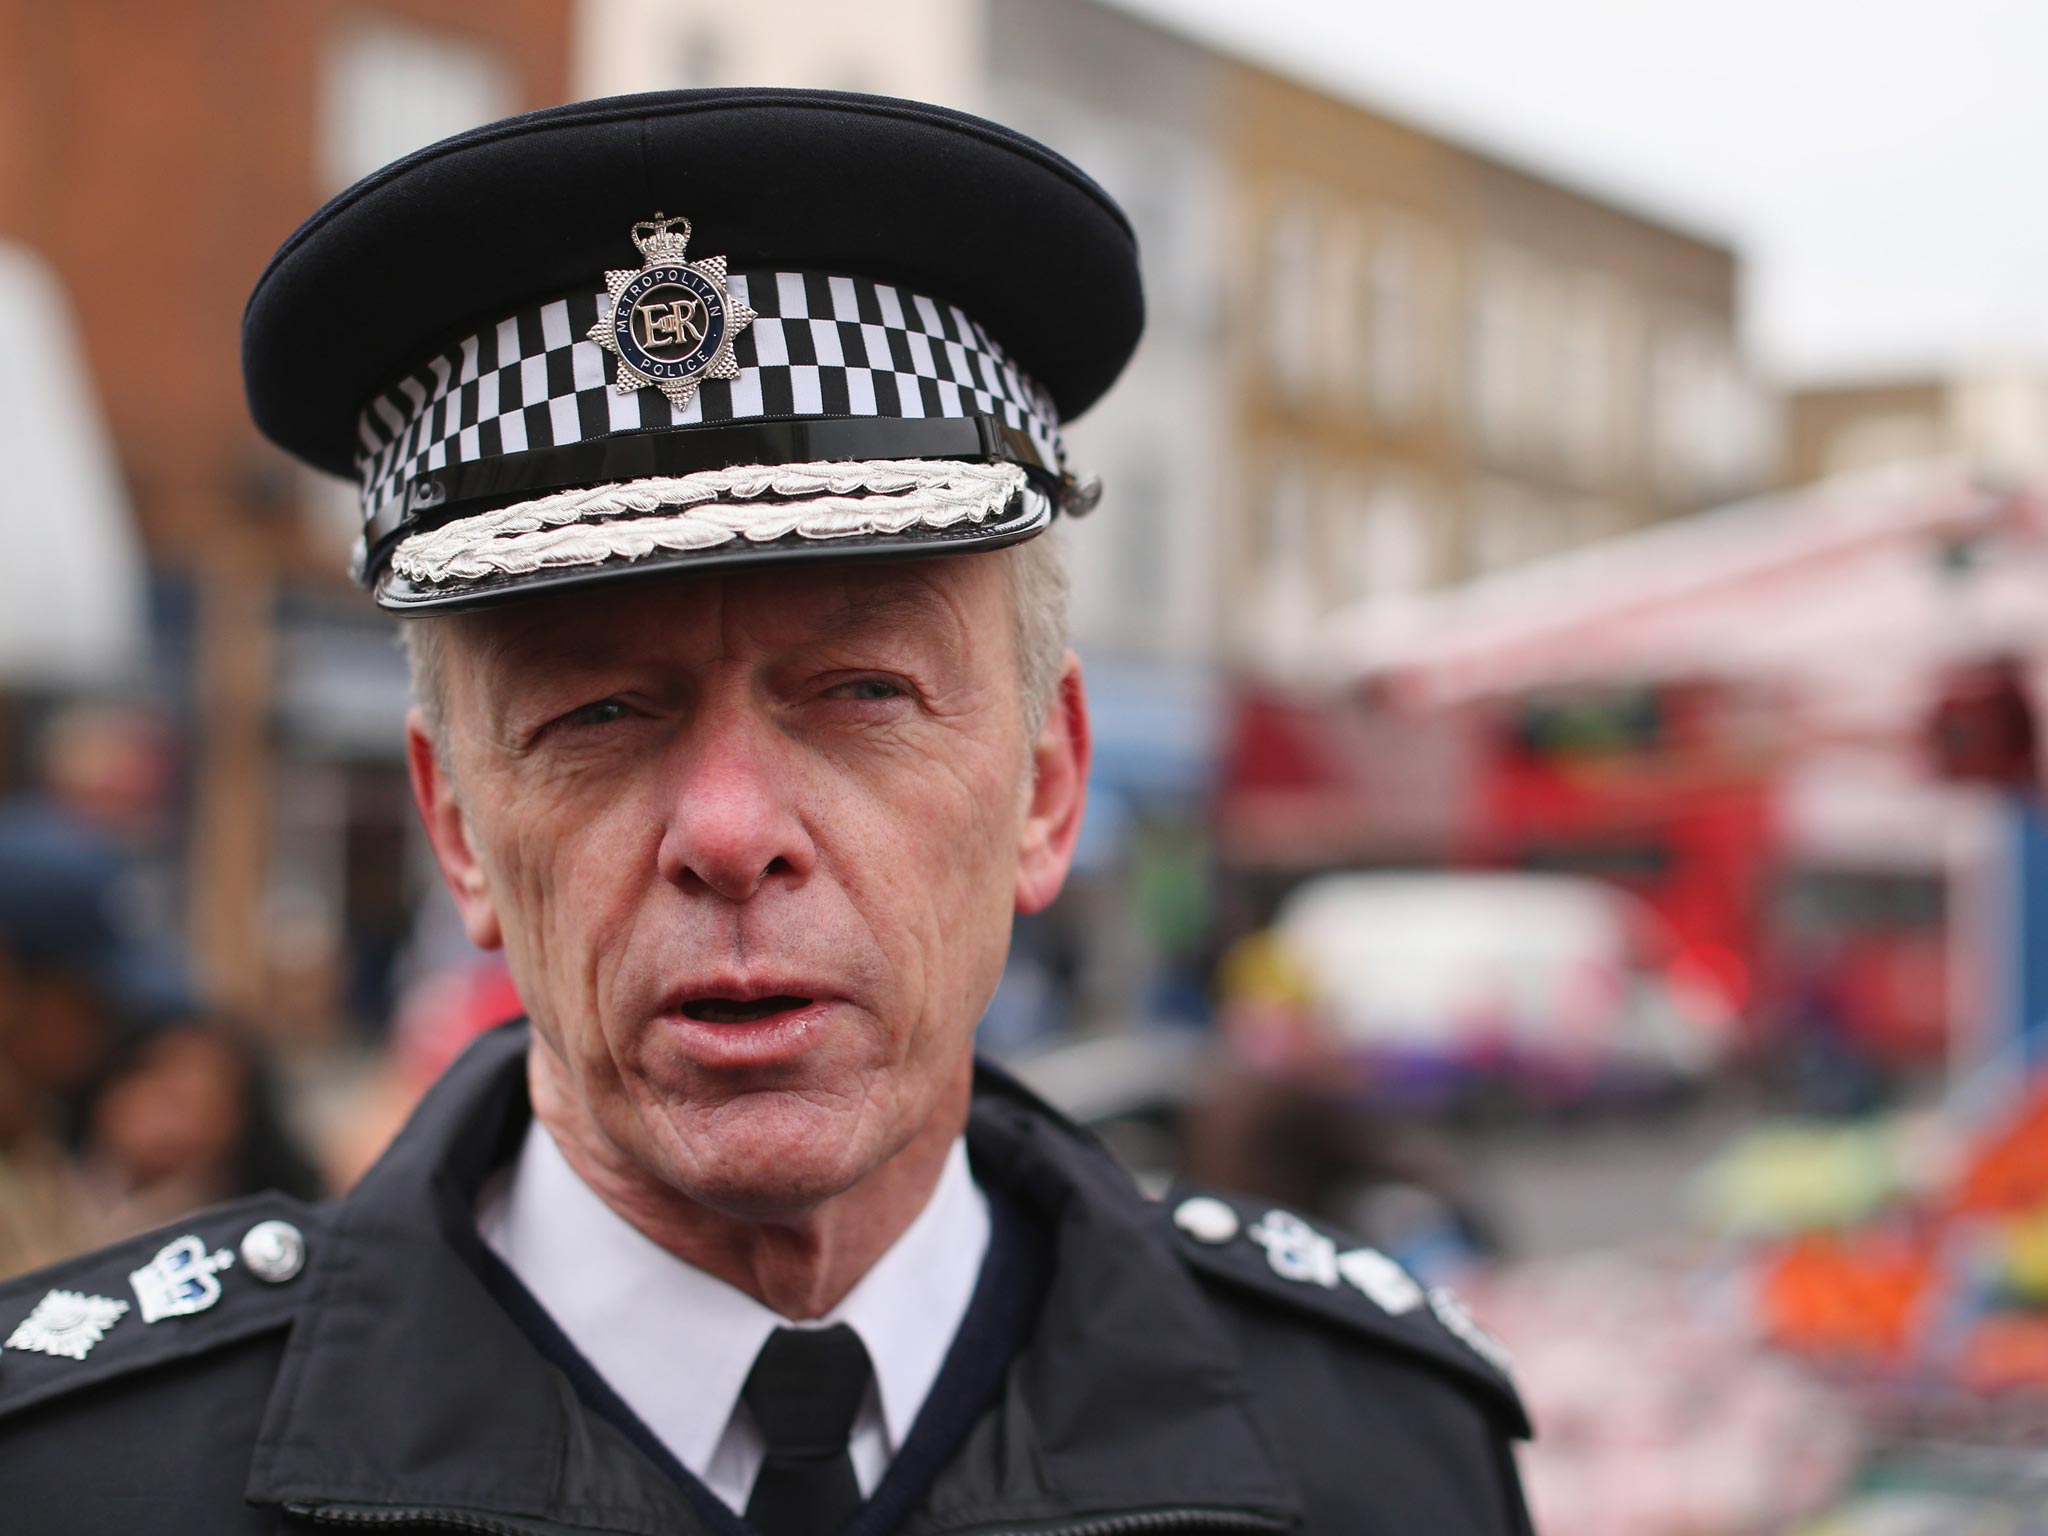 Metropolitan Police Commissioner, Sir Bernard Hogan-Howe